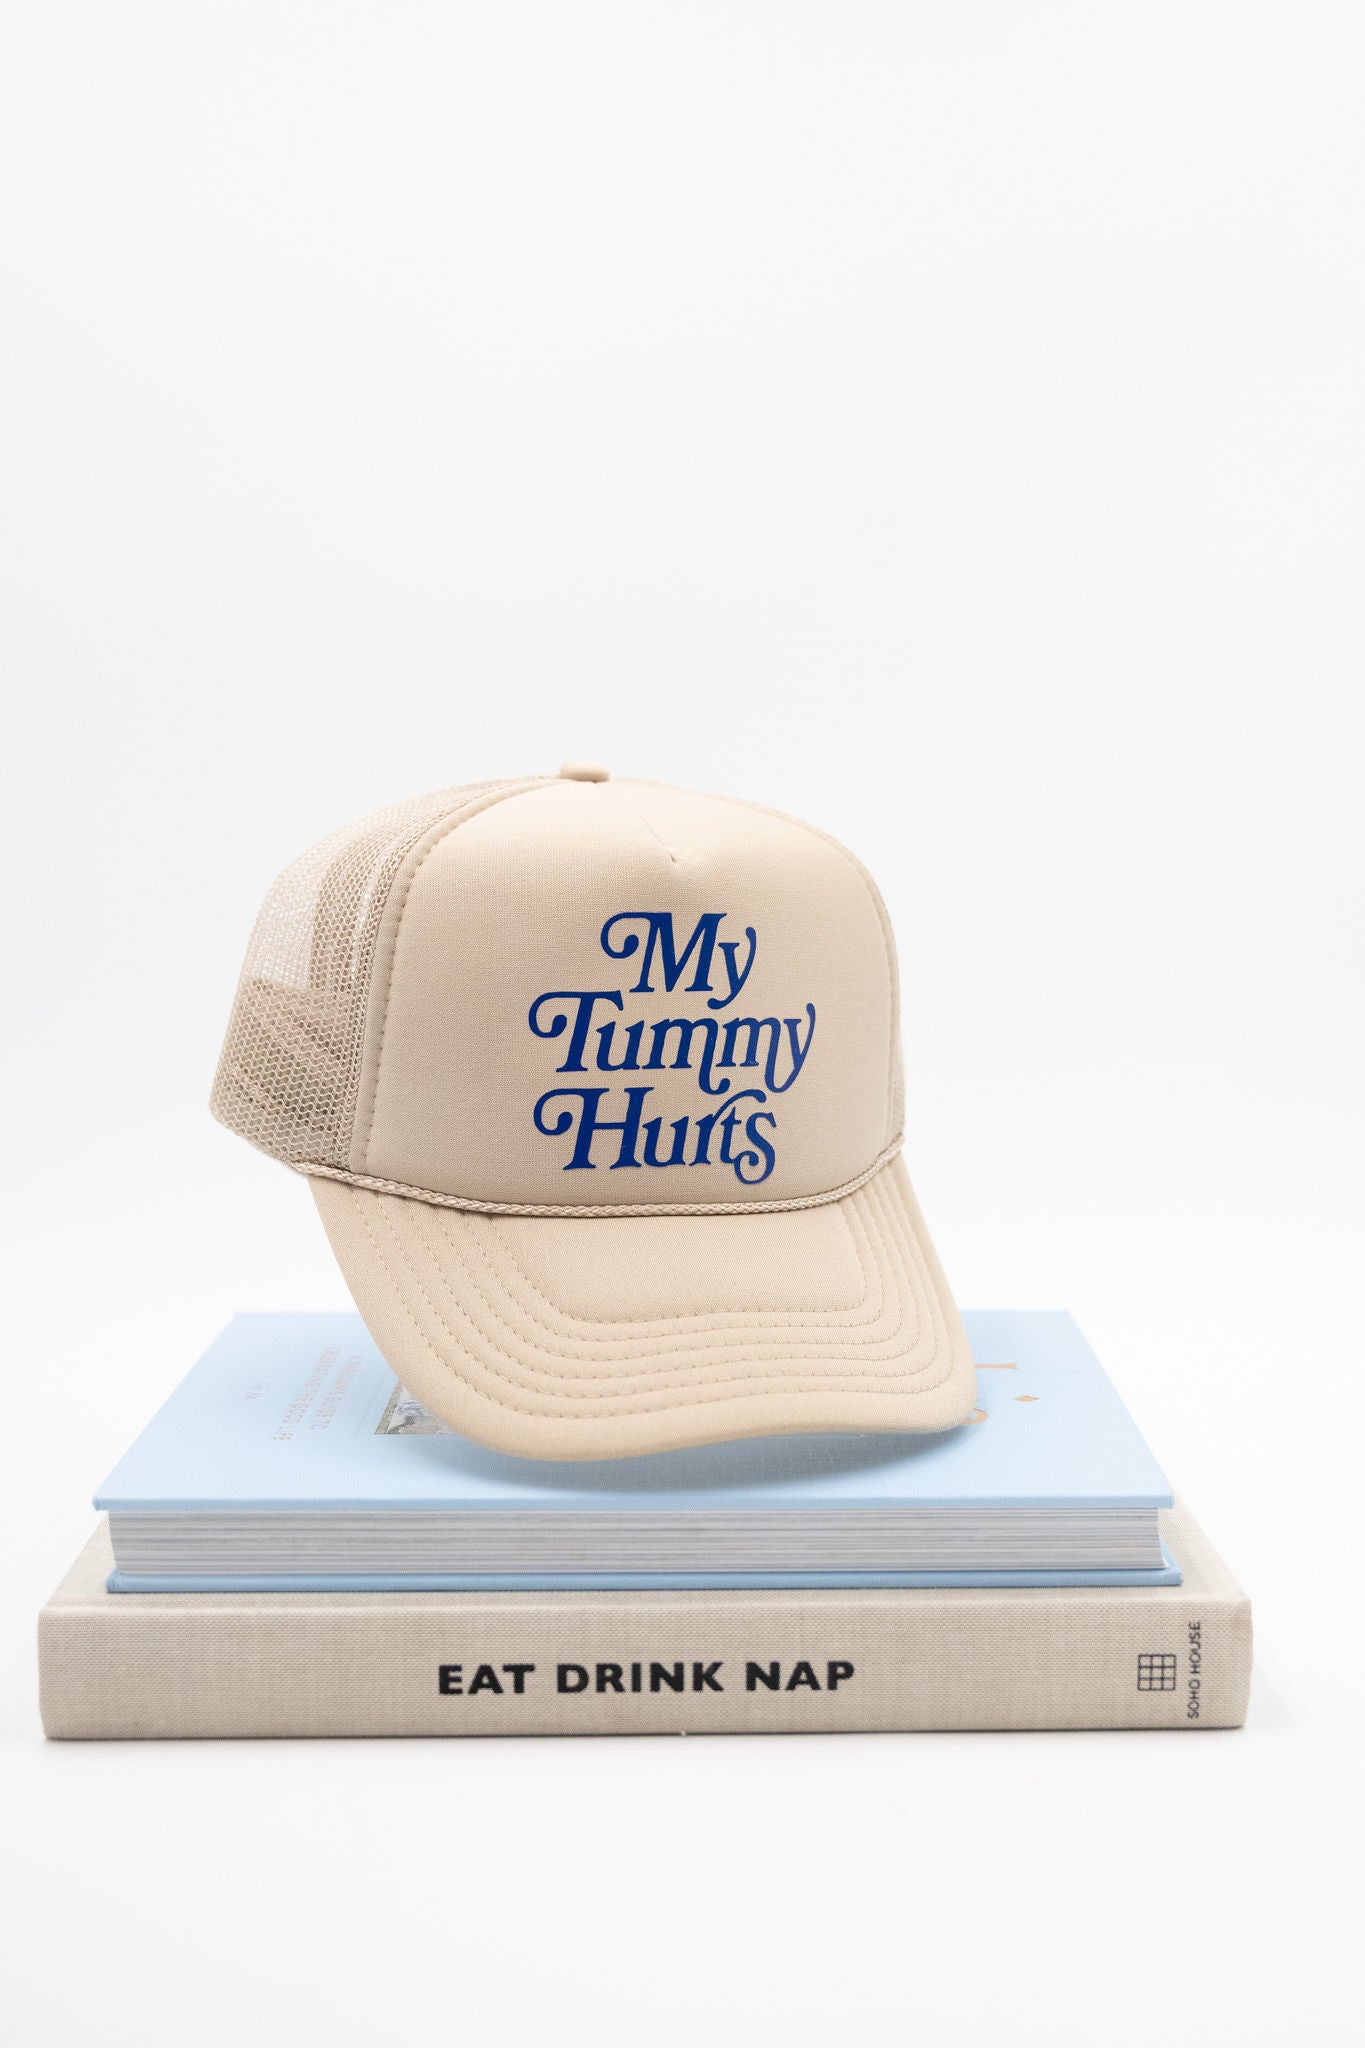 My Tummy Hurts Hat